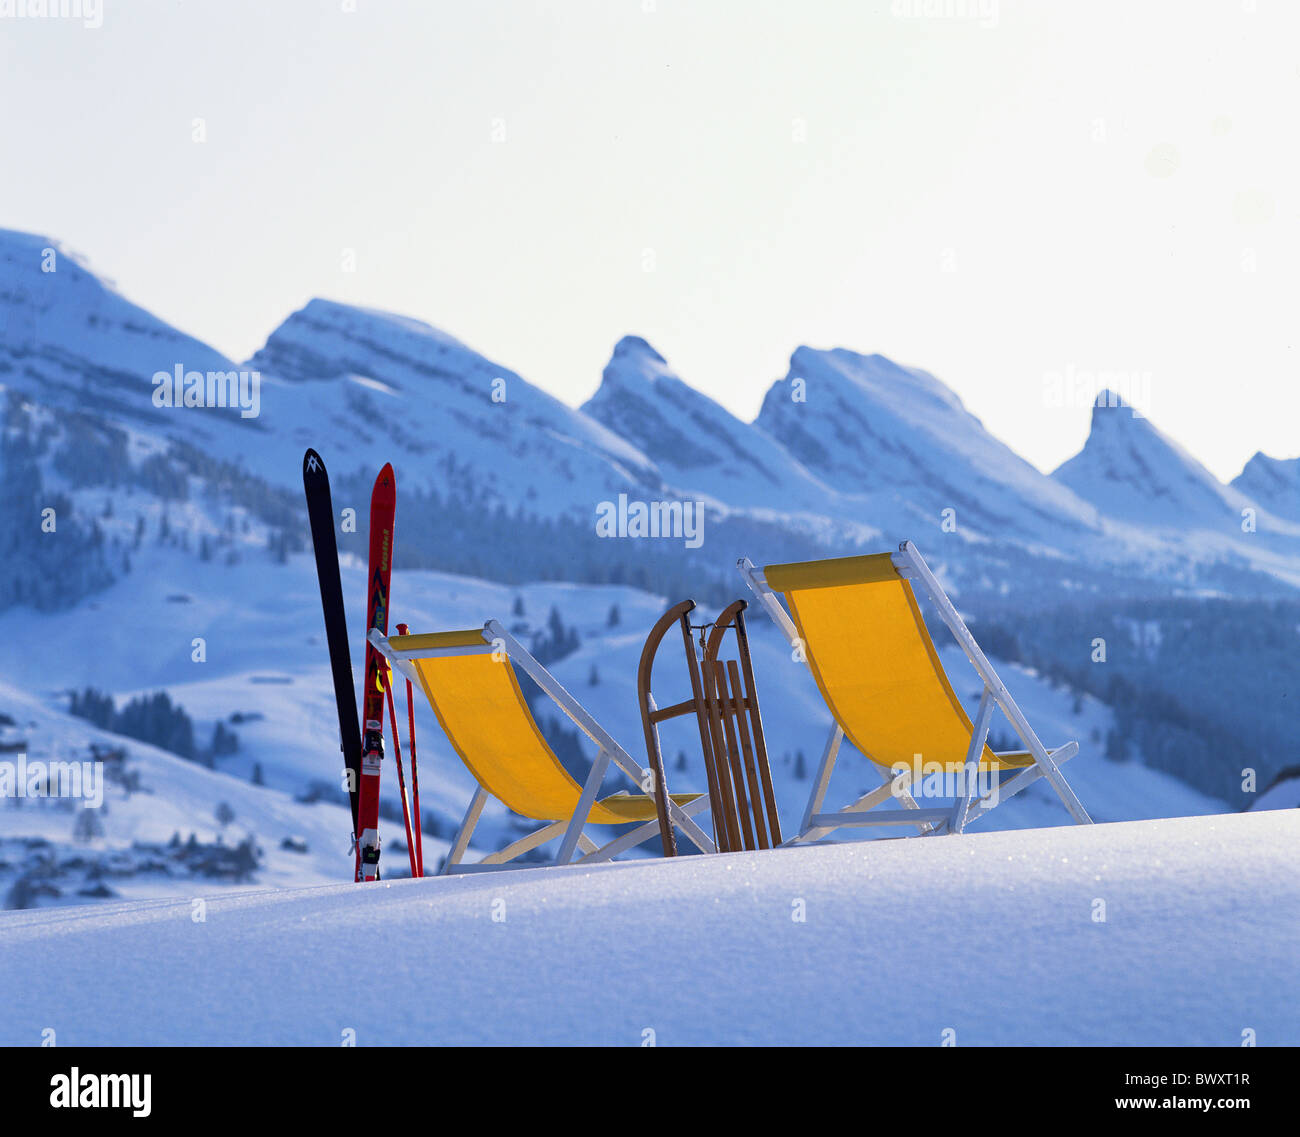 Churfirsten Liegestühle Schlitten Schlitten Schnee glitzernde Ski Ski Winter Wintersport Sport Ski Skifahren Stockfoto